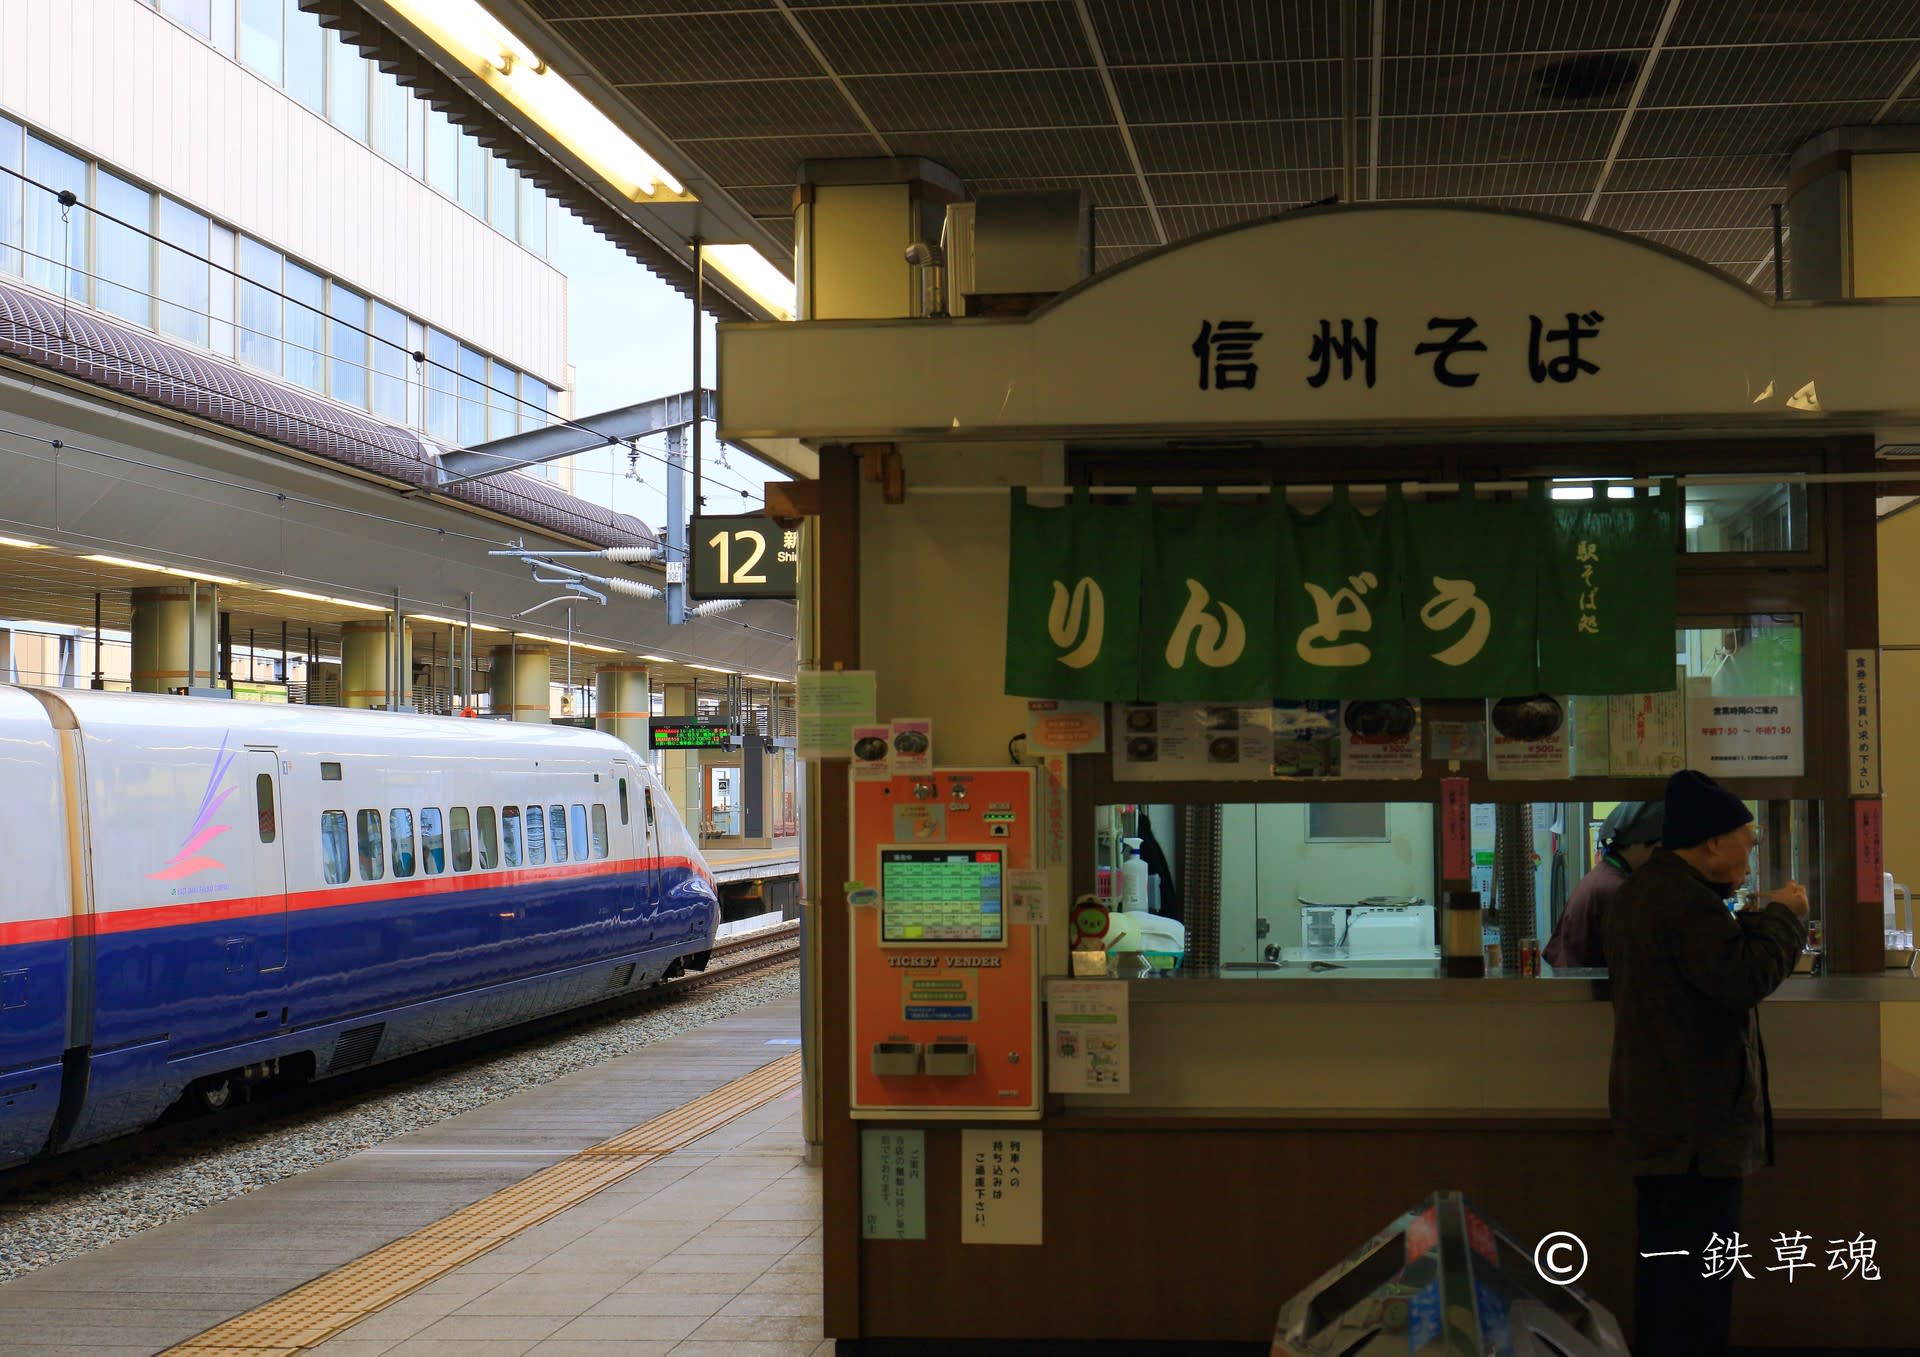 消える長野駅の風景 一鉄草魂 鉄道風景 乗車記 ときどき名所とグルメ